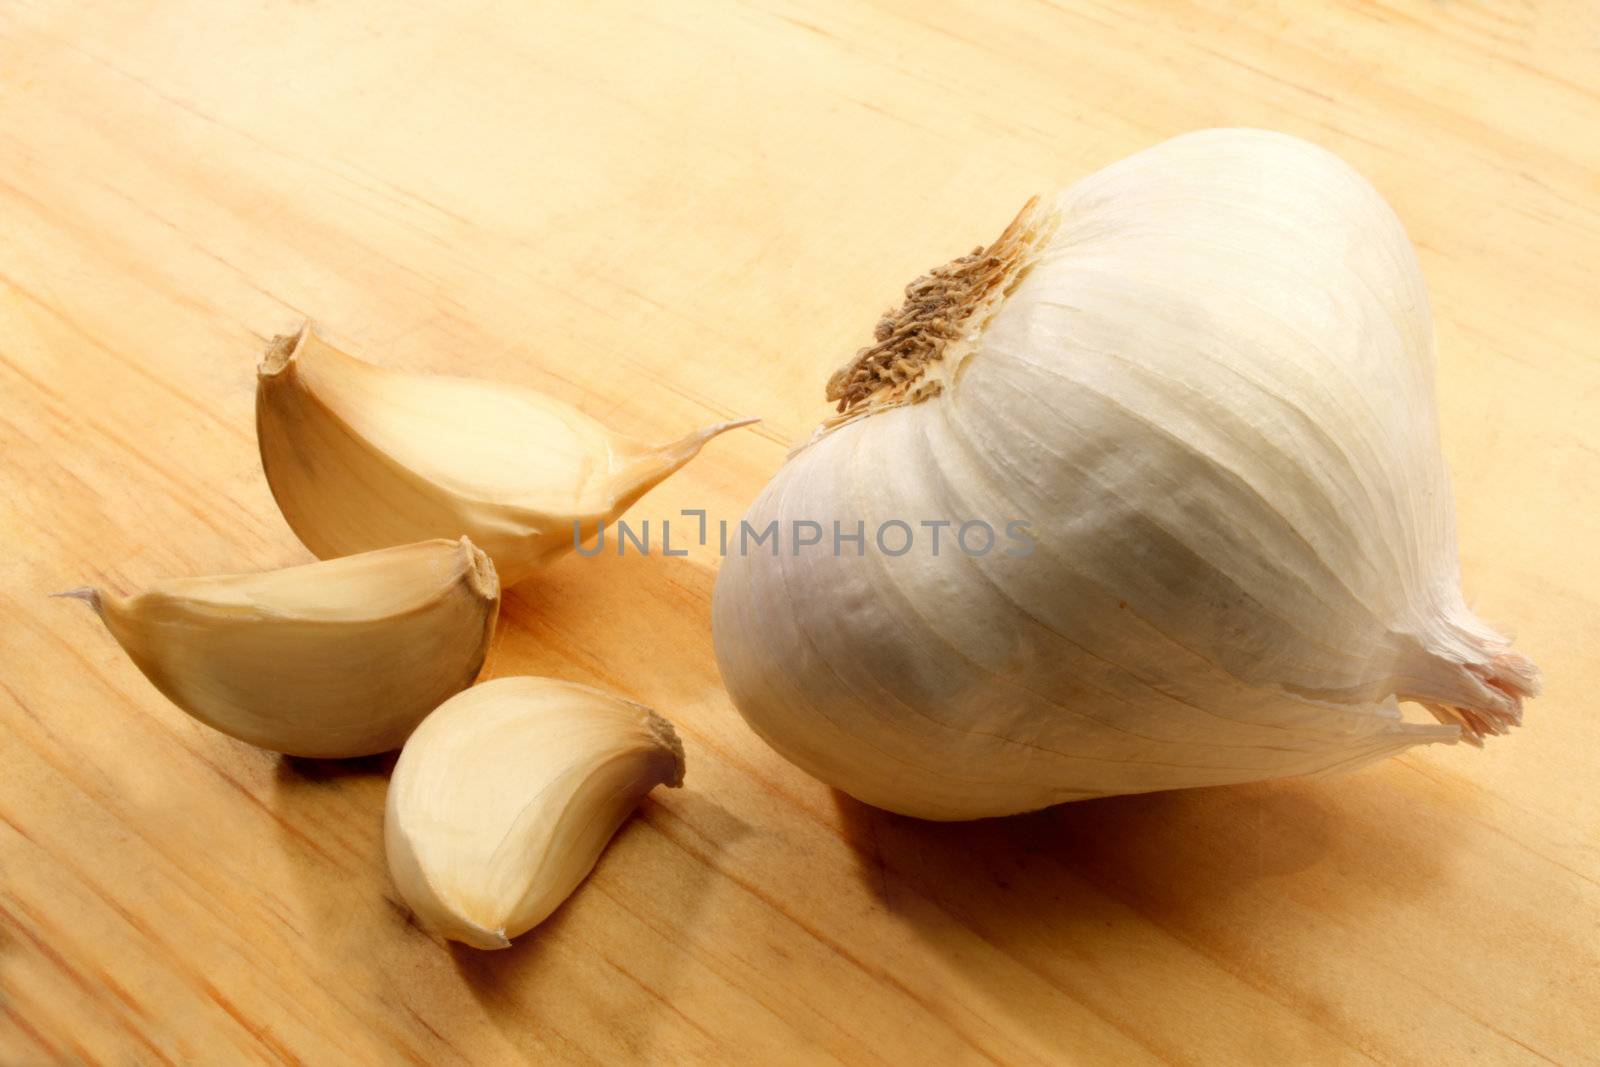 Garlic displayed on a wooden cutting board.